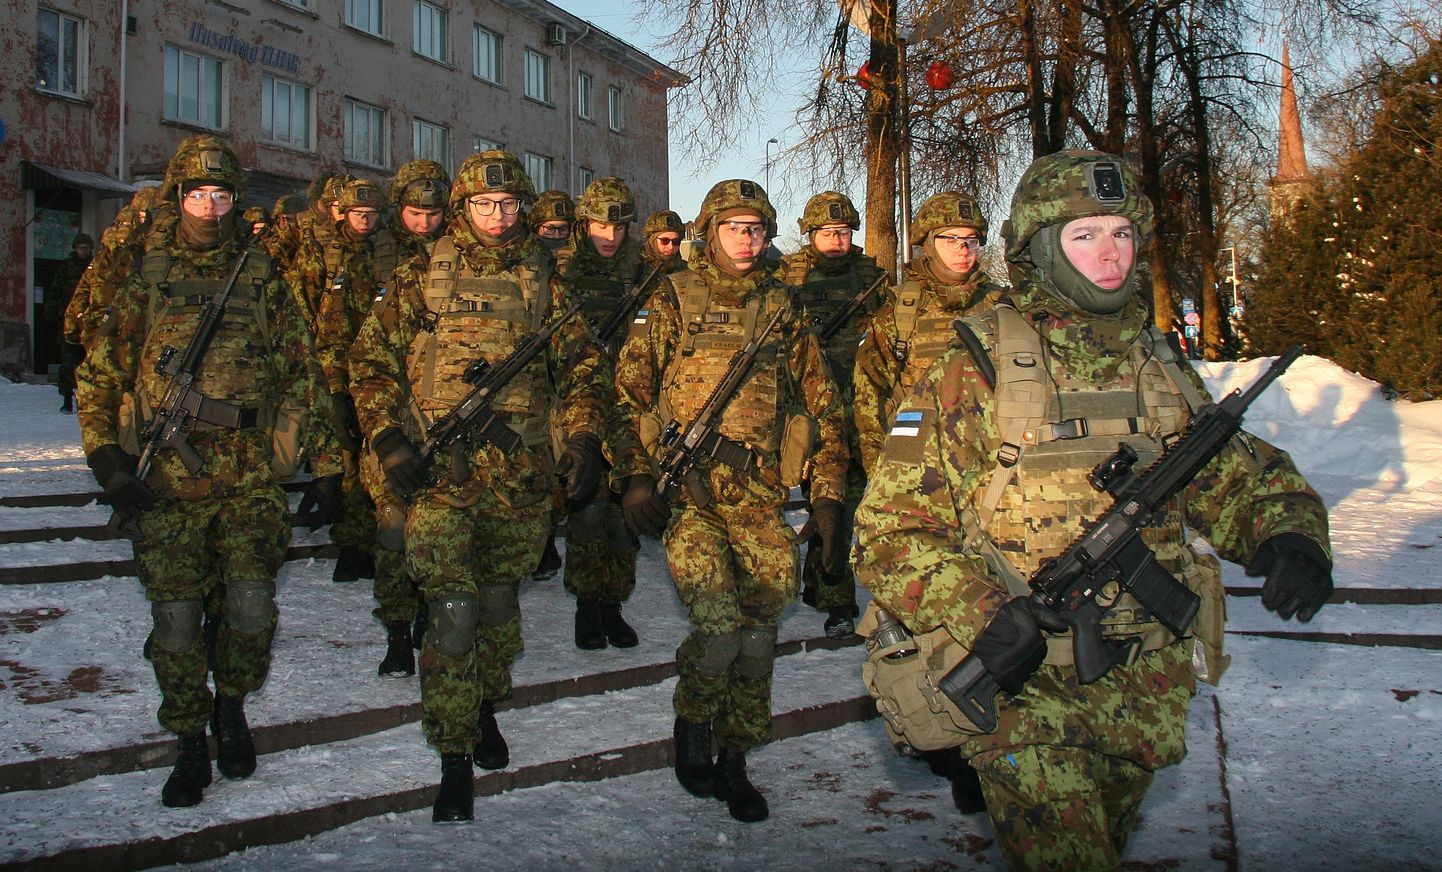 Viru pataljoni võitlejad on jõudmas Jõhvi keskväljakule.